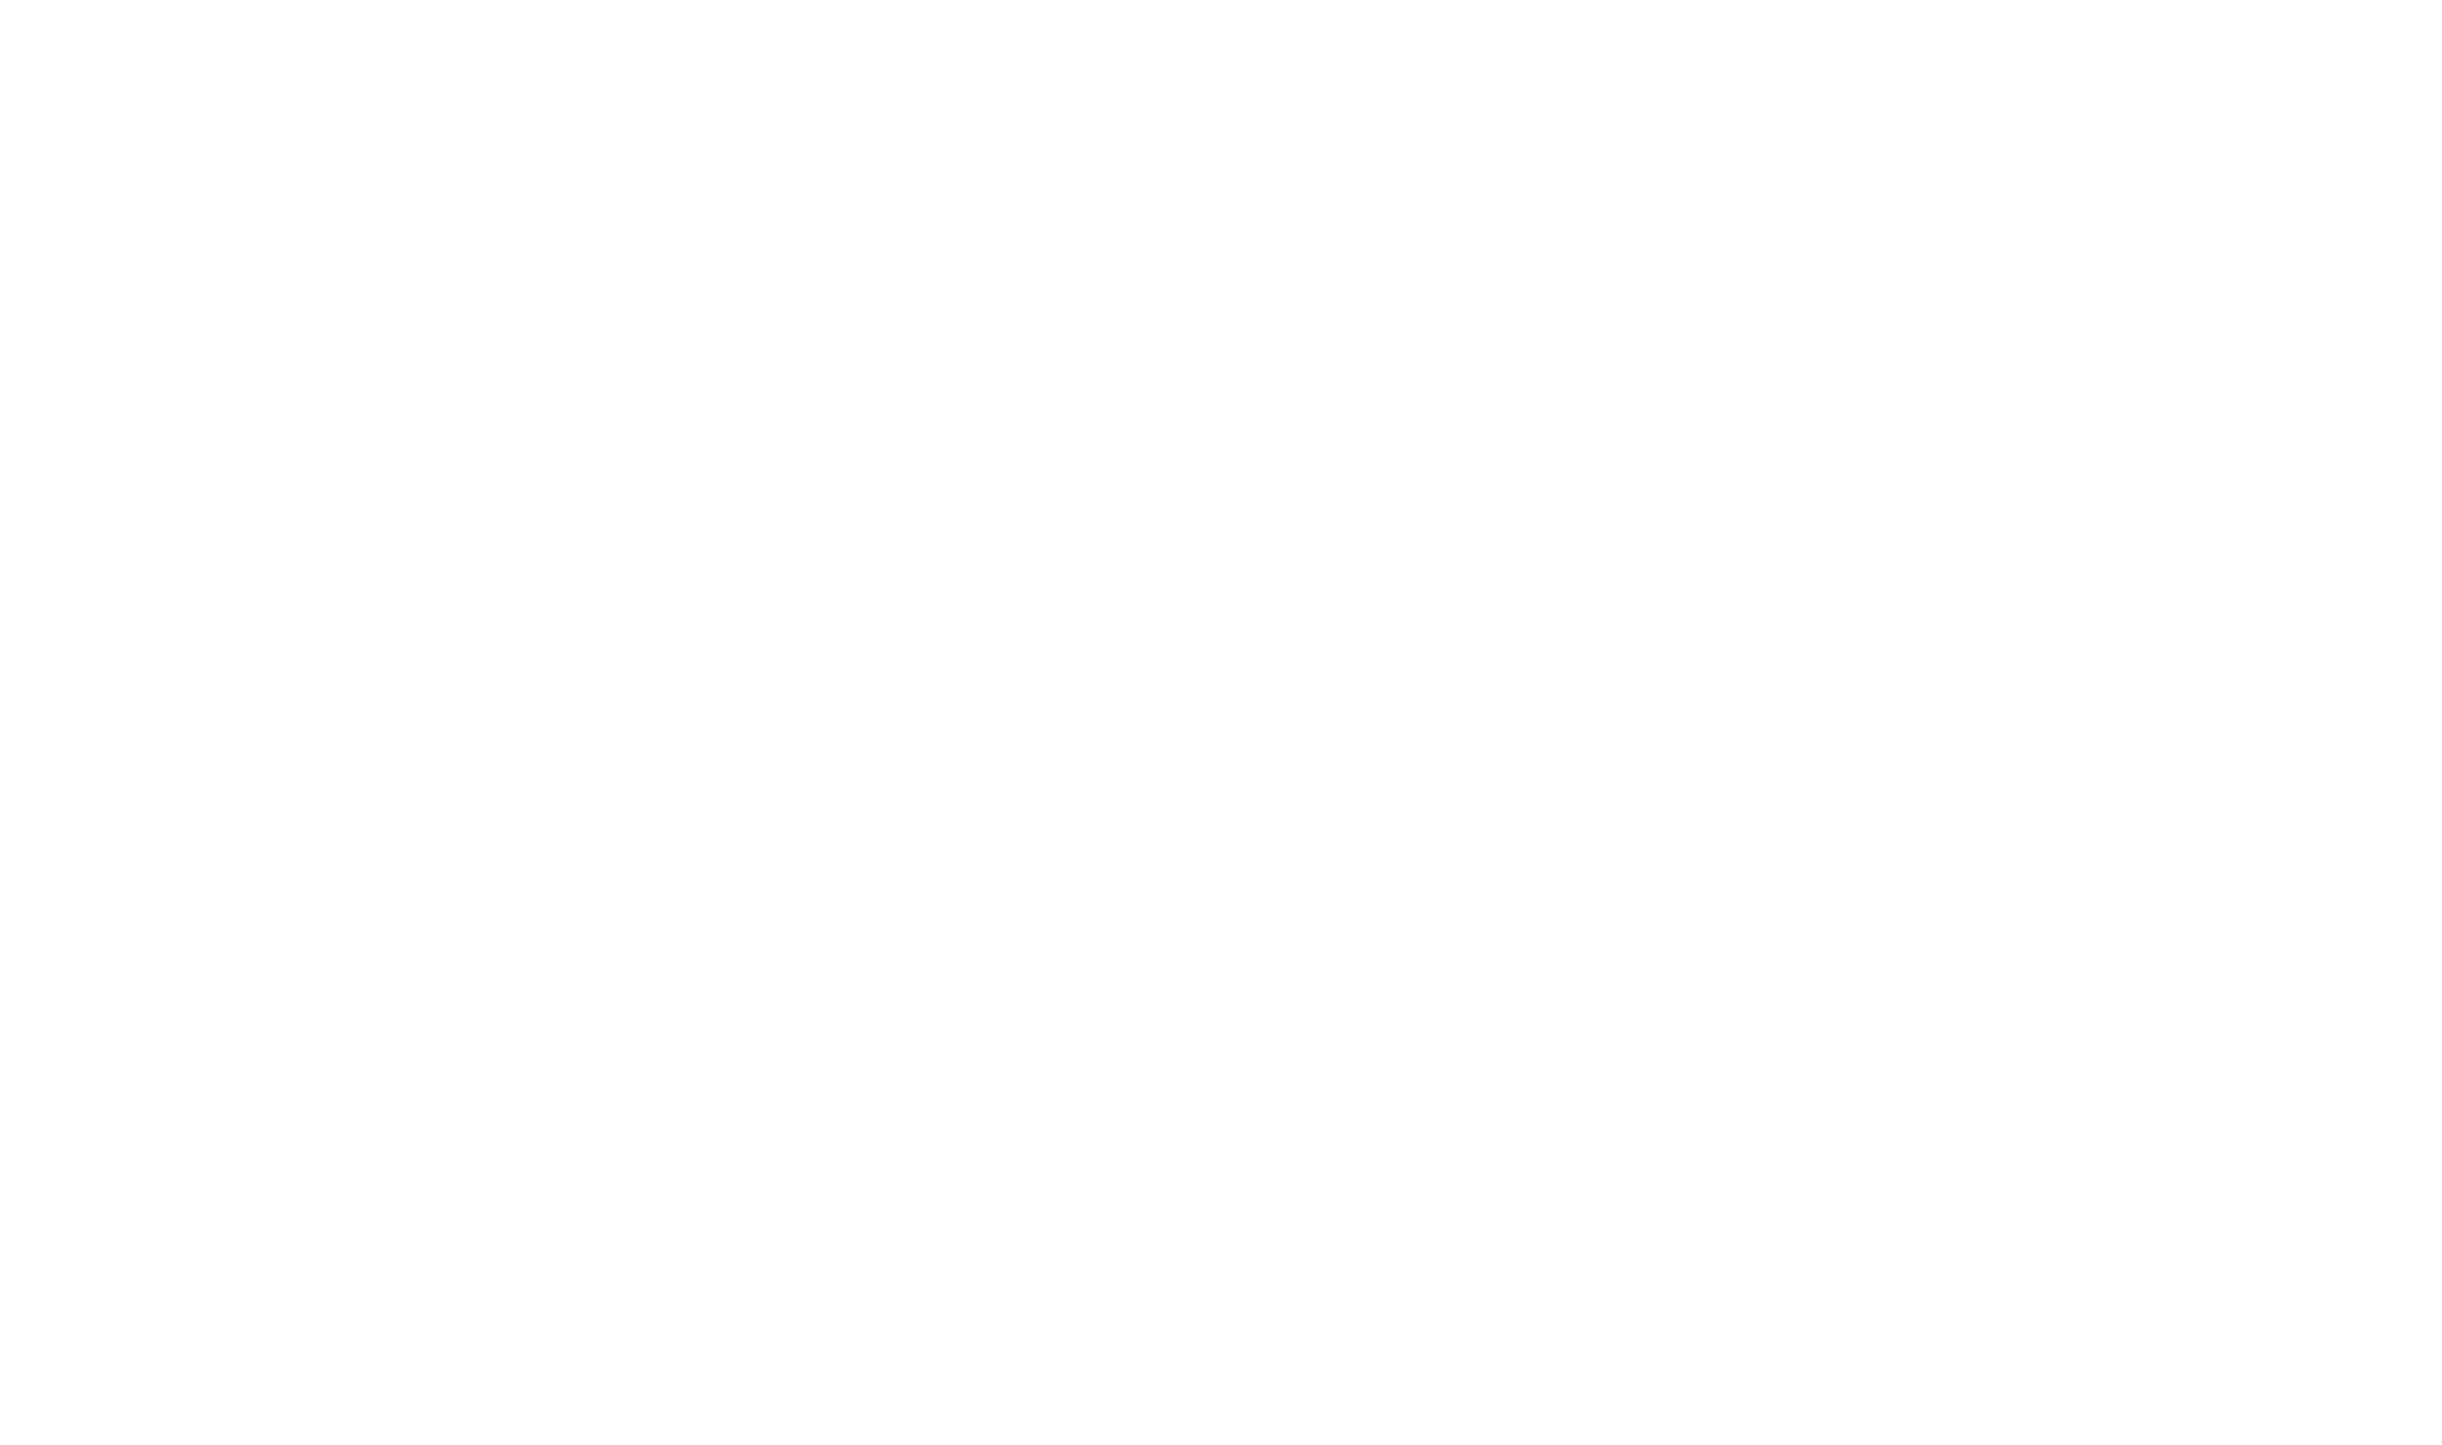 kronos